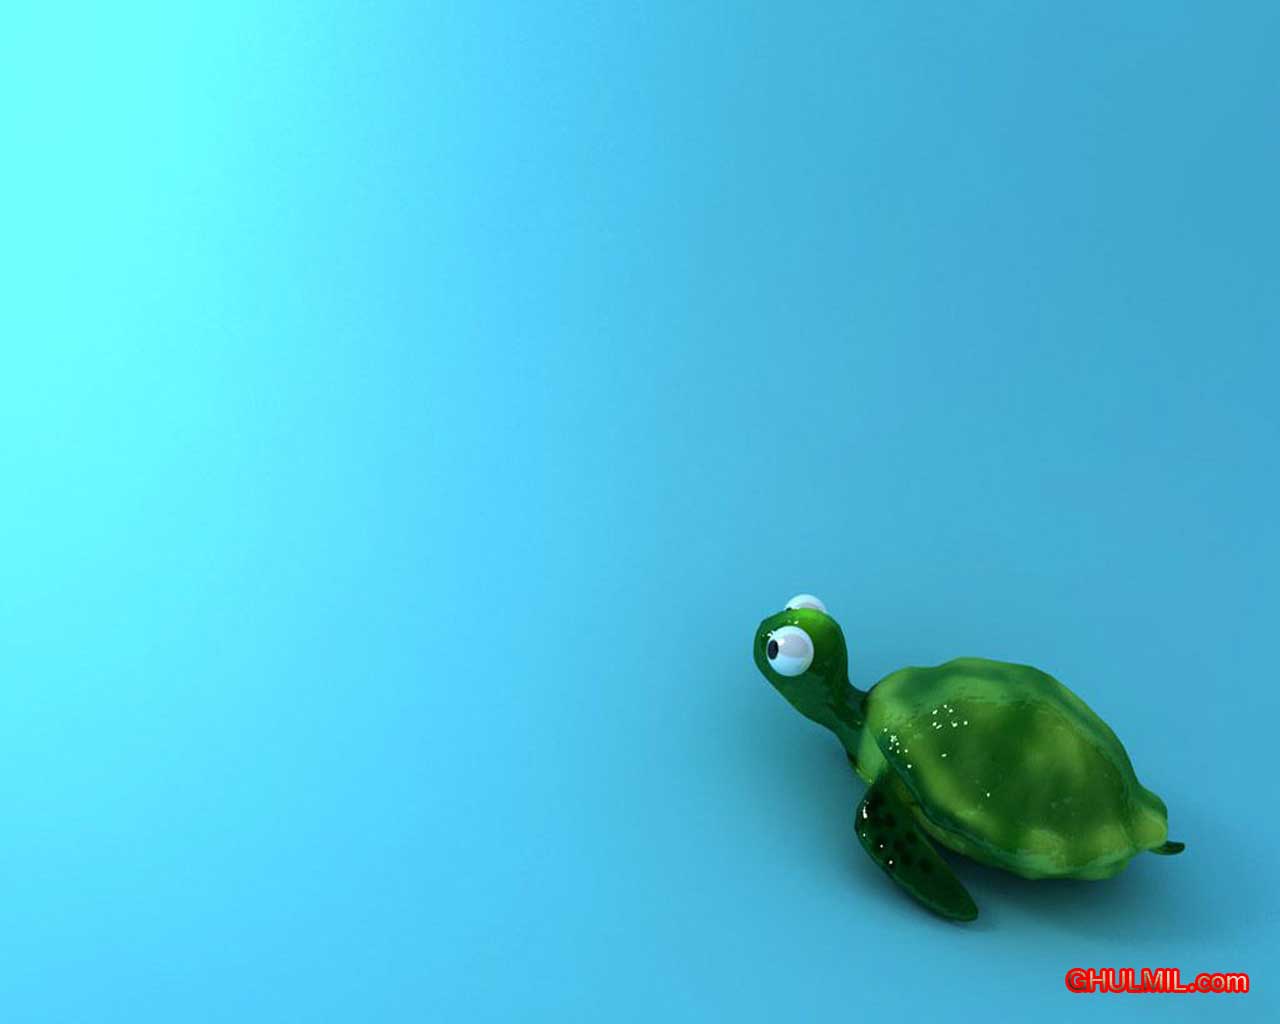 77+] Cute Turtle Wallpaper - WallpaperSafari